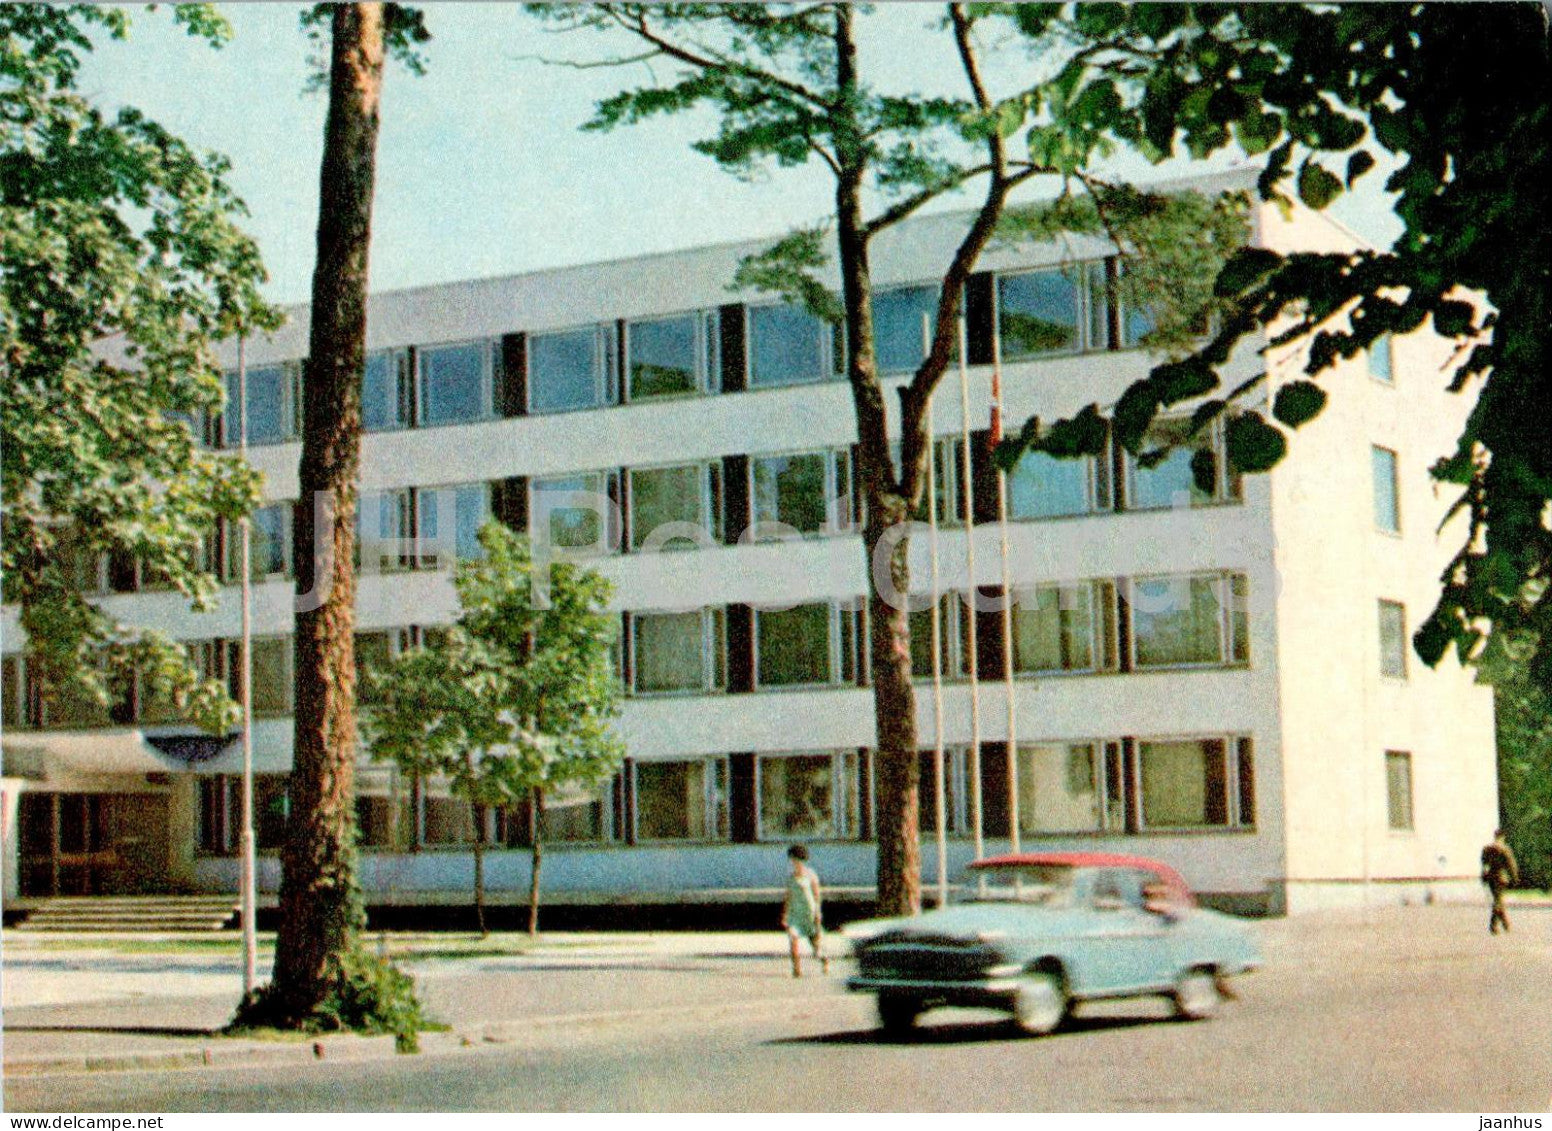 Jurmala - Majori - Building of the Jurmala Executive Committee - car Volga - Latvia USSR - unused